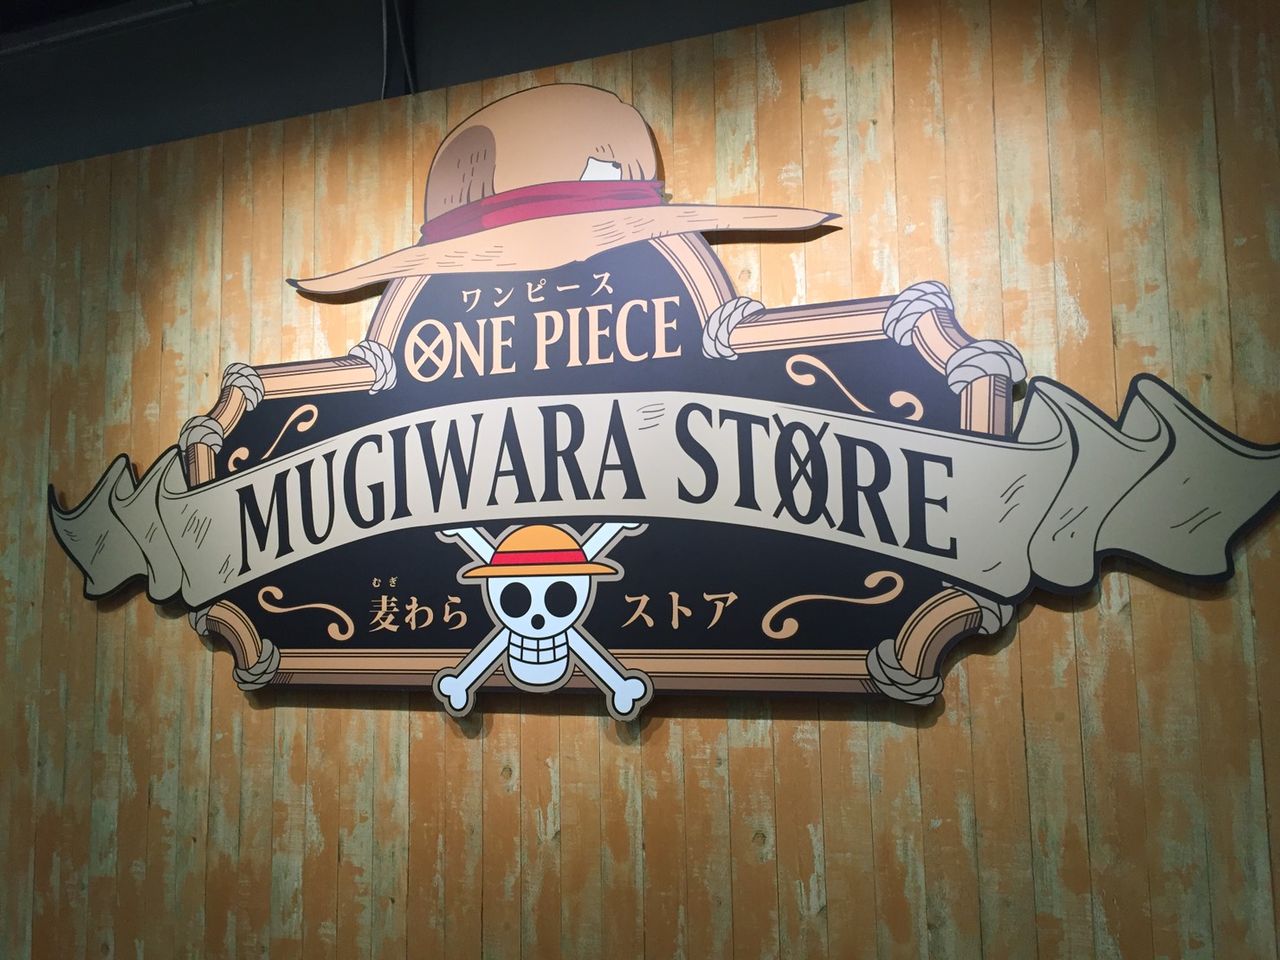 出張店 One Piece 麦わらストア 京都 オープン One Piece 麦わらストア 航海日誌